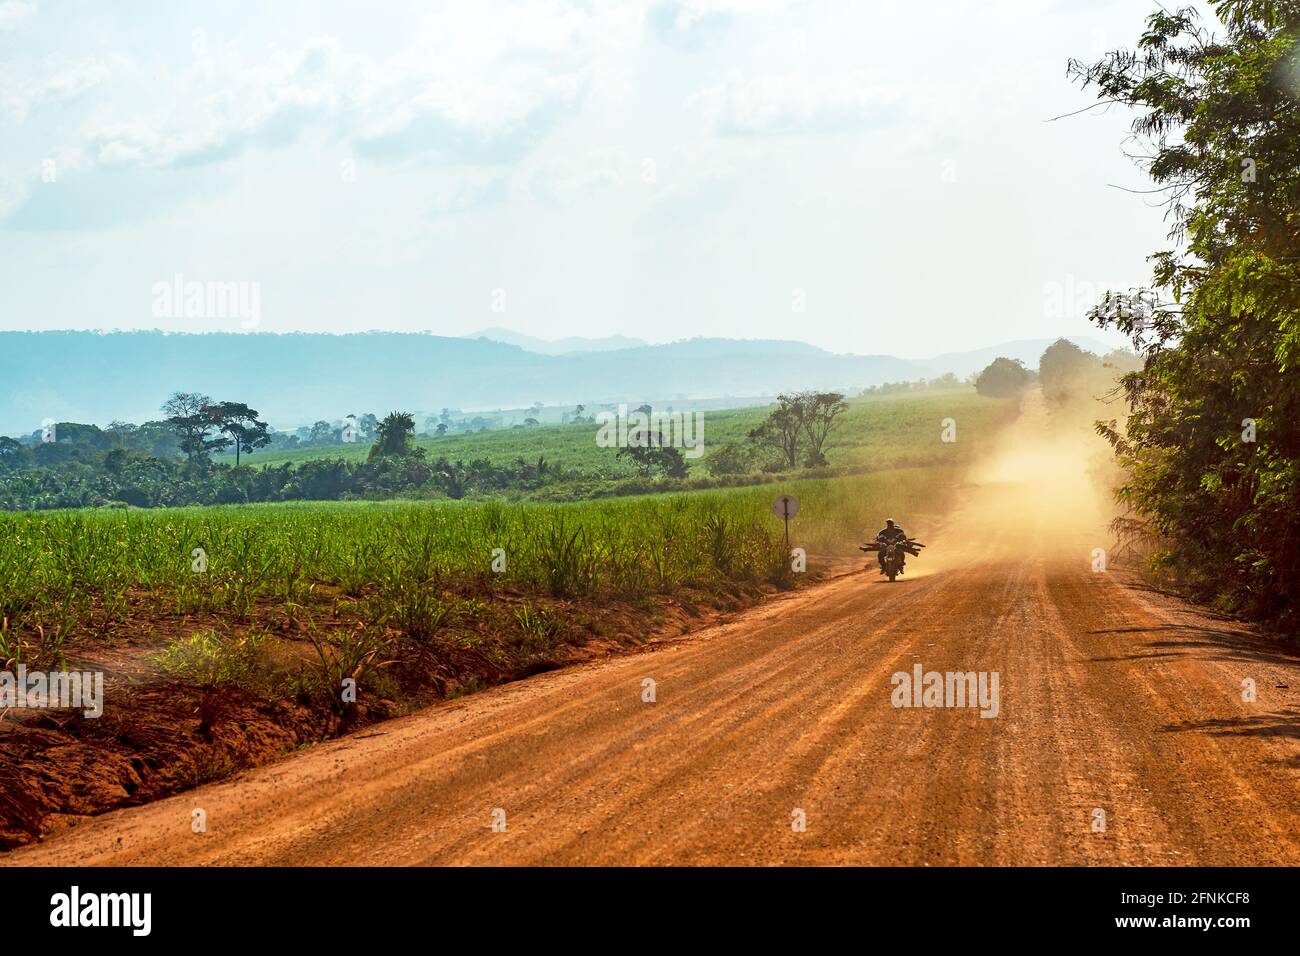 Pilote de moto sur une route poussiéreuse en Afrique Banque D'Images